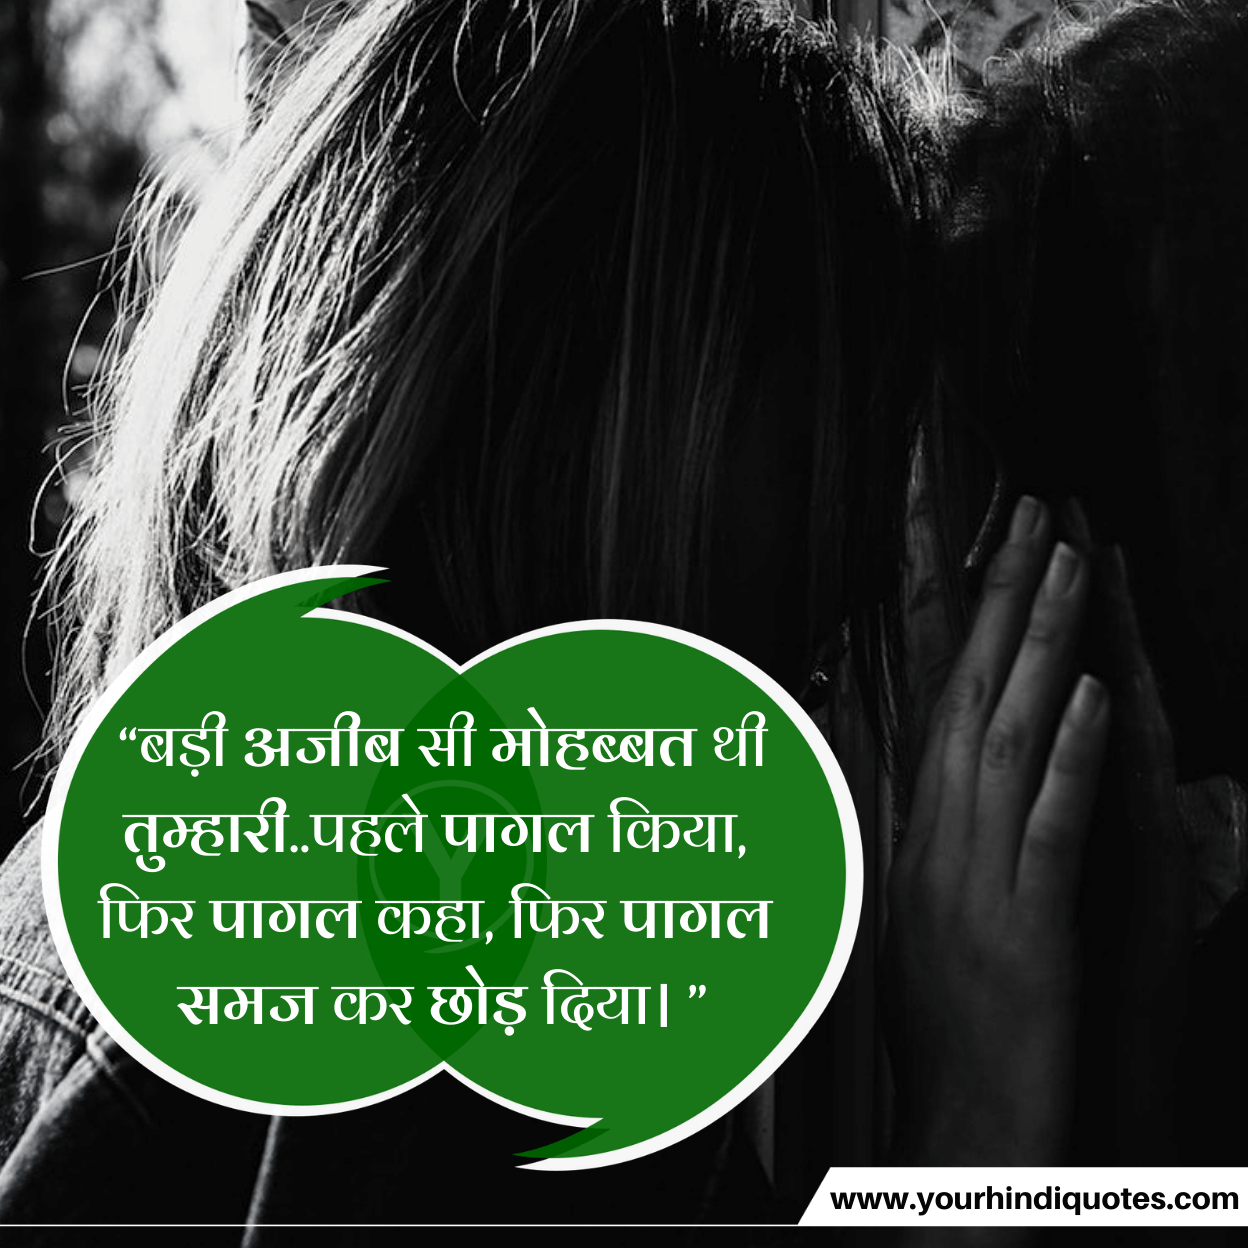 Sad Quotes Hindi Images